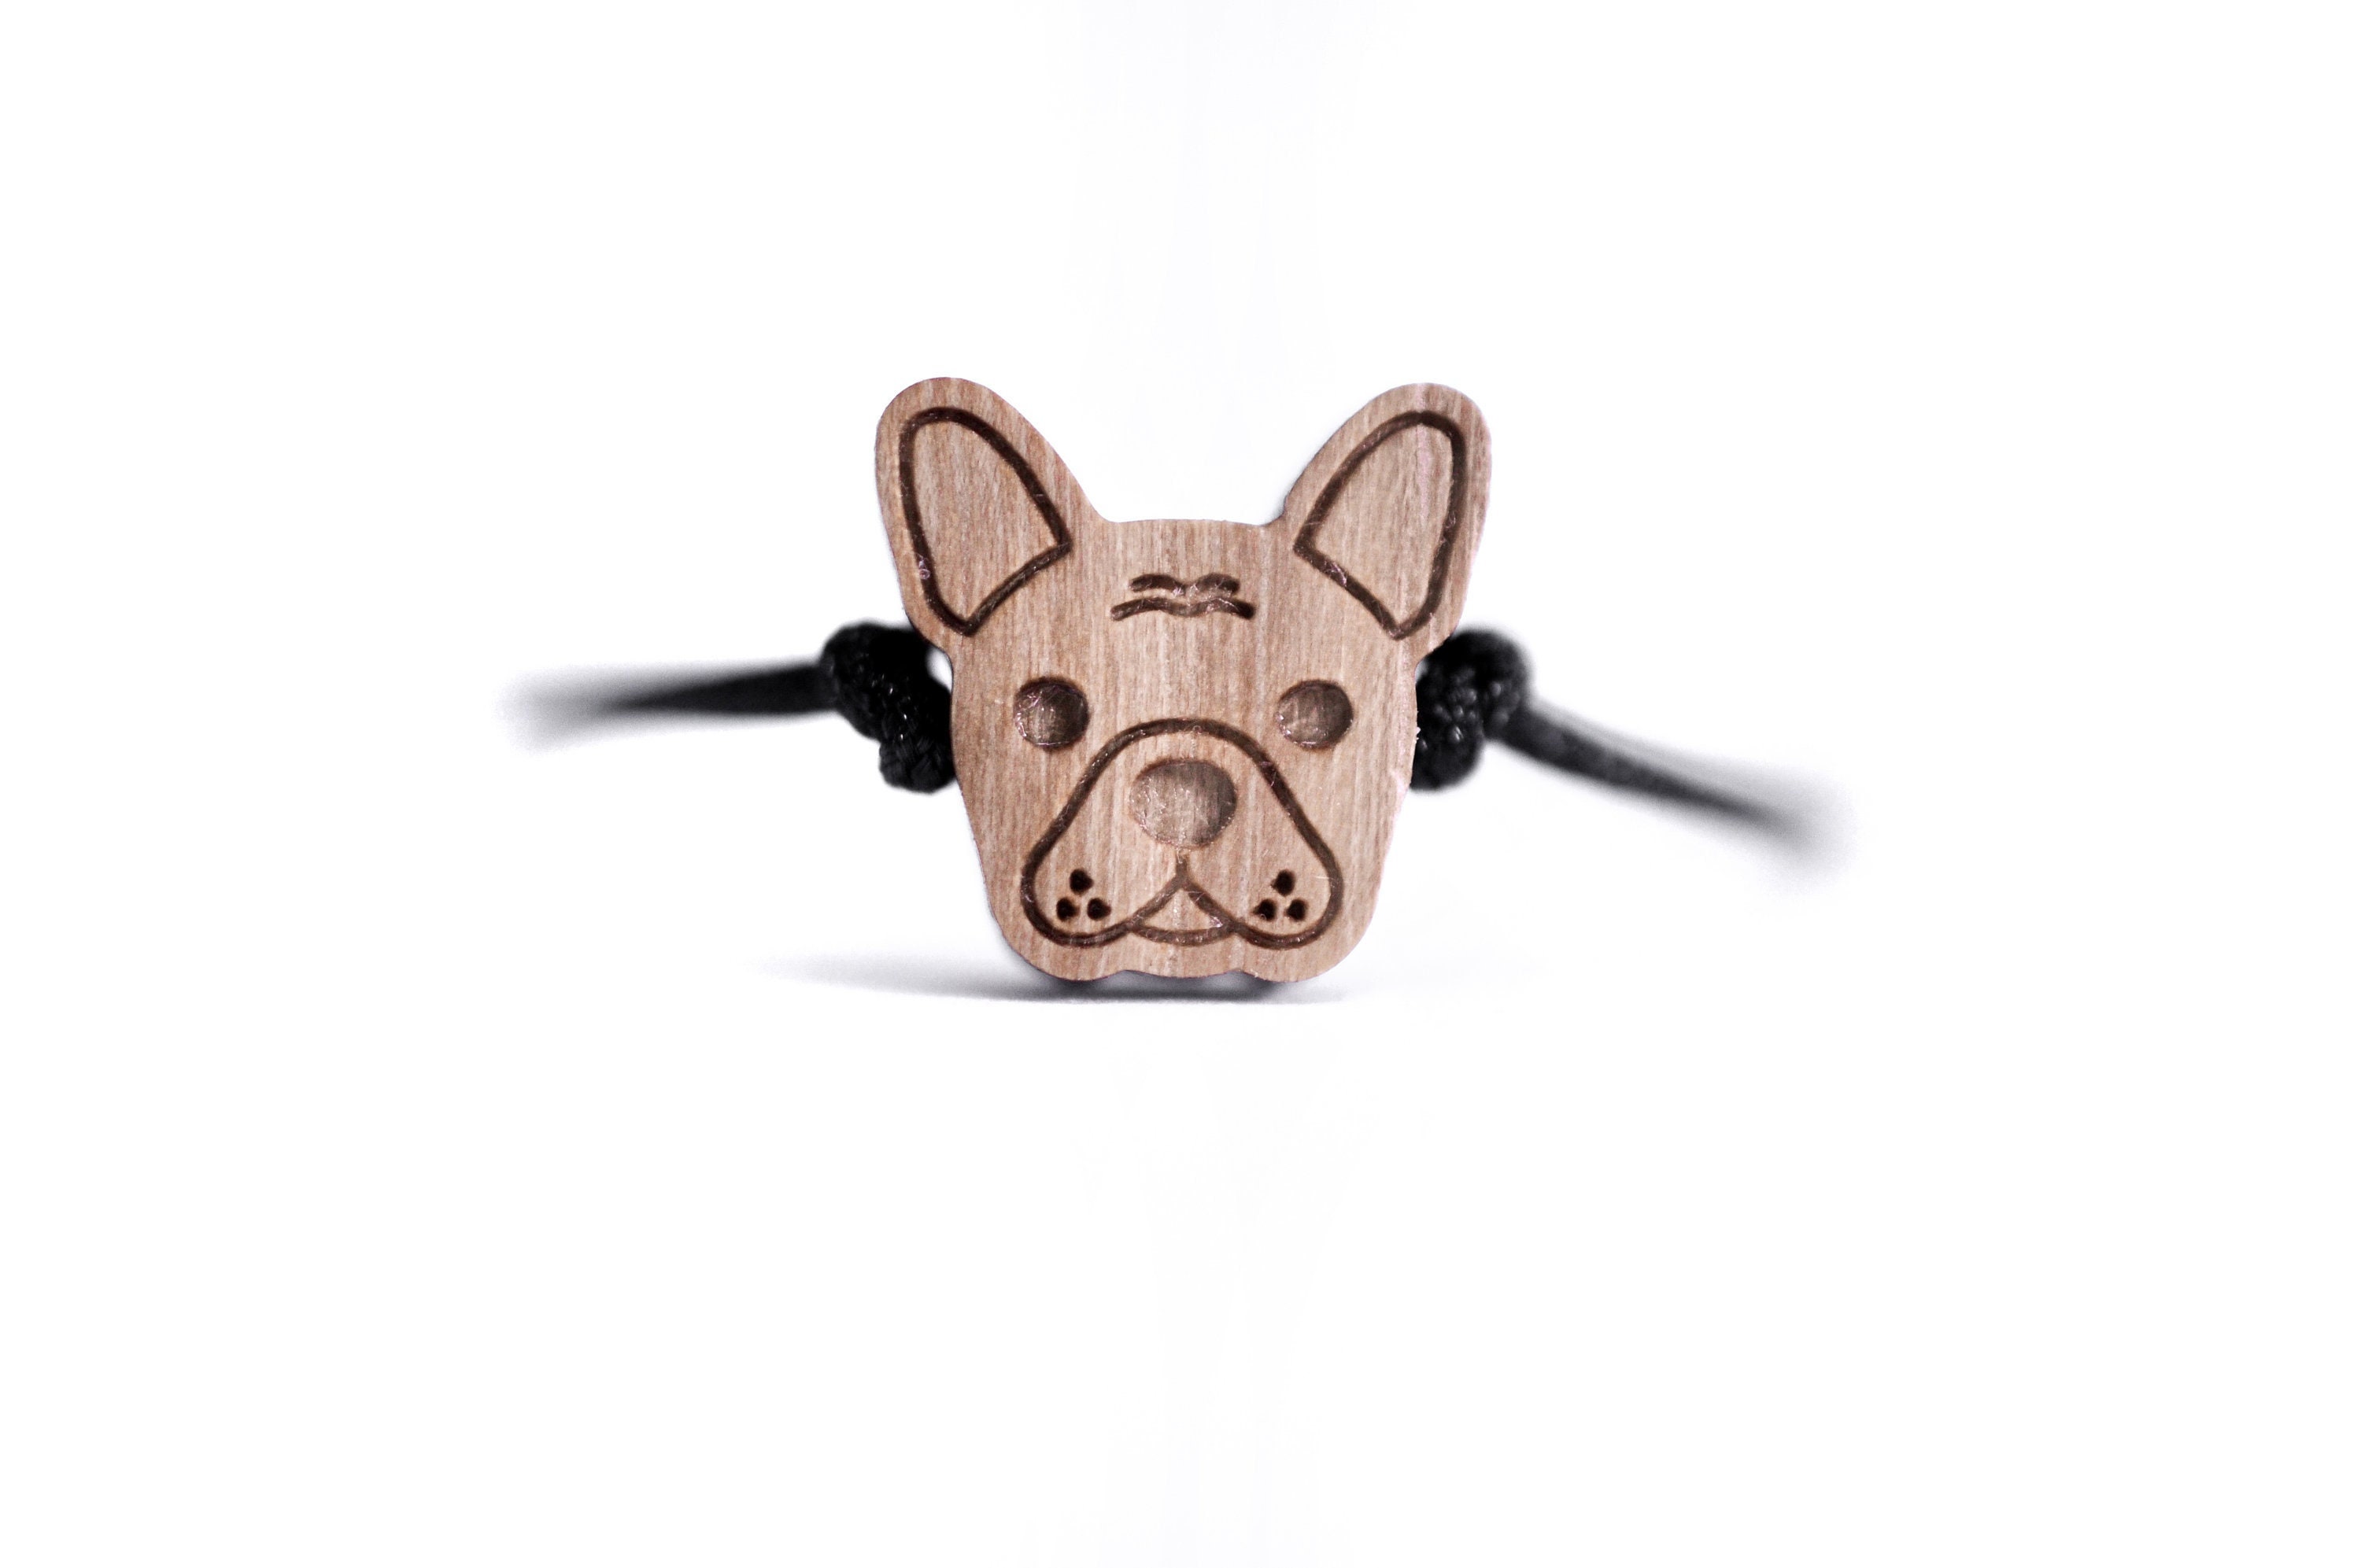 Armband mit Französische Bulldogge Anhänger, 925 Silber – Lieblingspfote